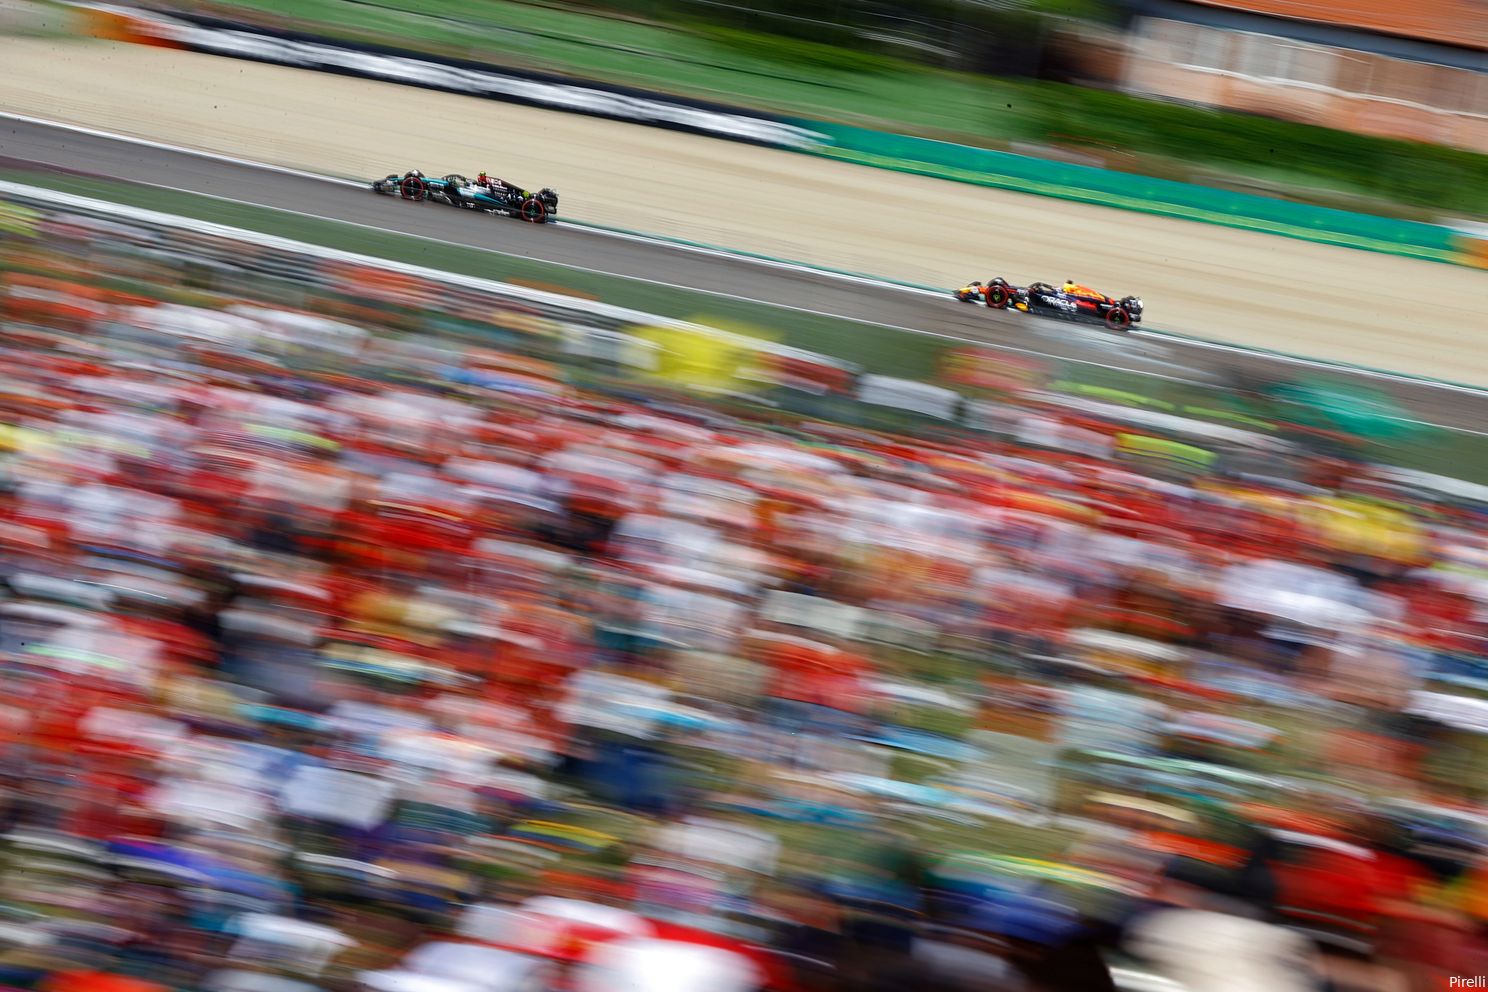 Windsor baalt van keuze Mercedes: 'Gevecht om leiding tussen Hamilton en Verstappen werd ons ontnomen'